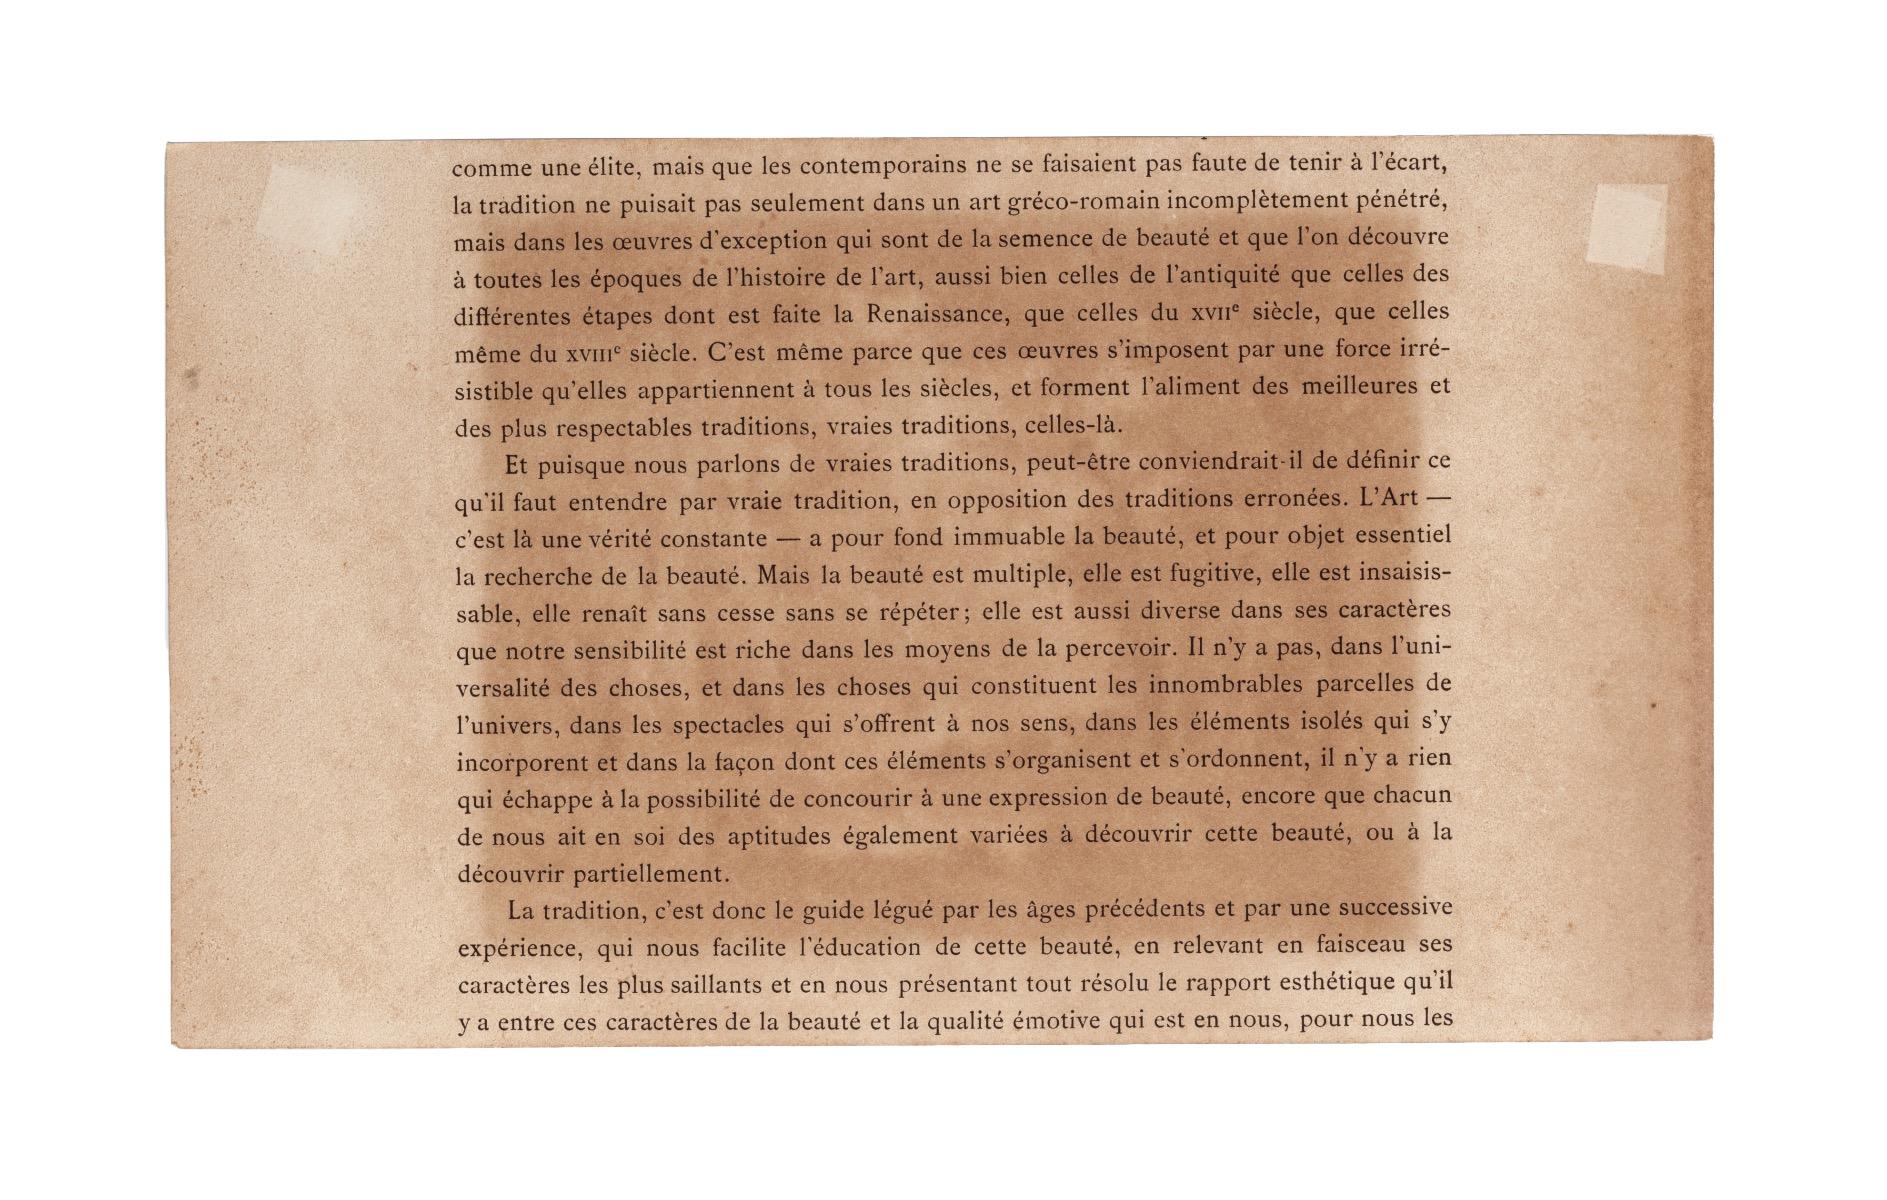 Intrieur de Fort - Gravure originale de Diaz - 1880 environ - Print de Narcisse Diaz de la Pena